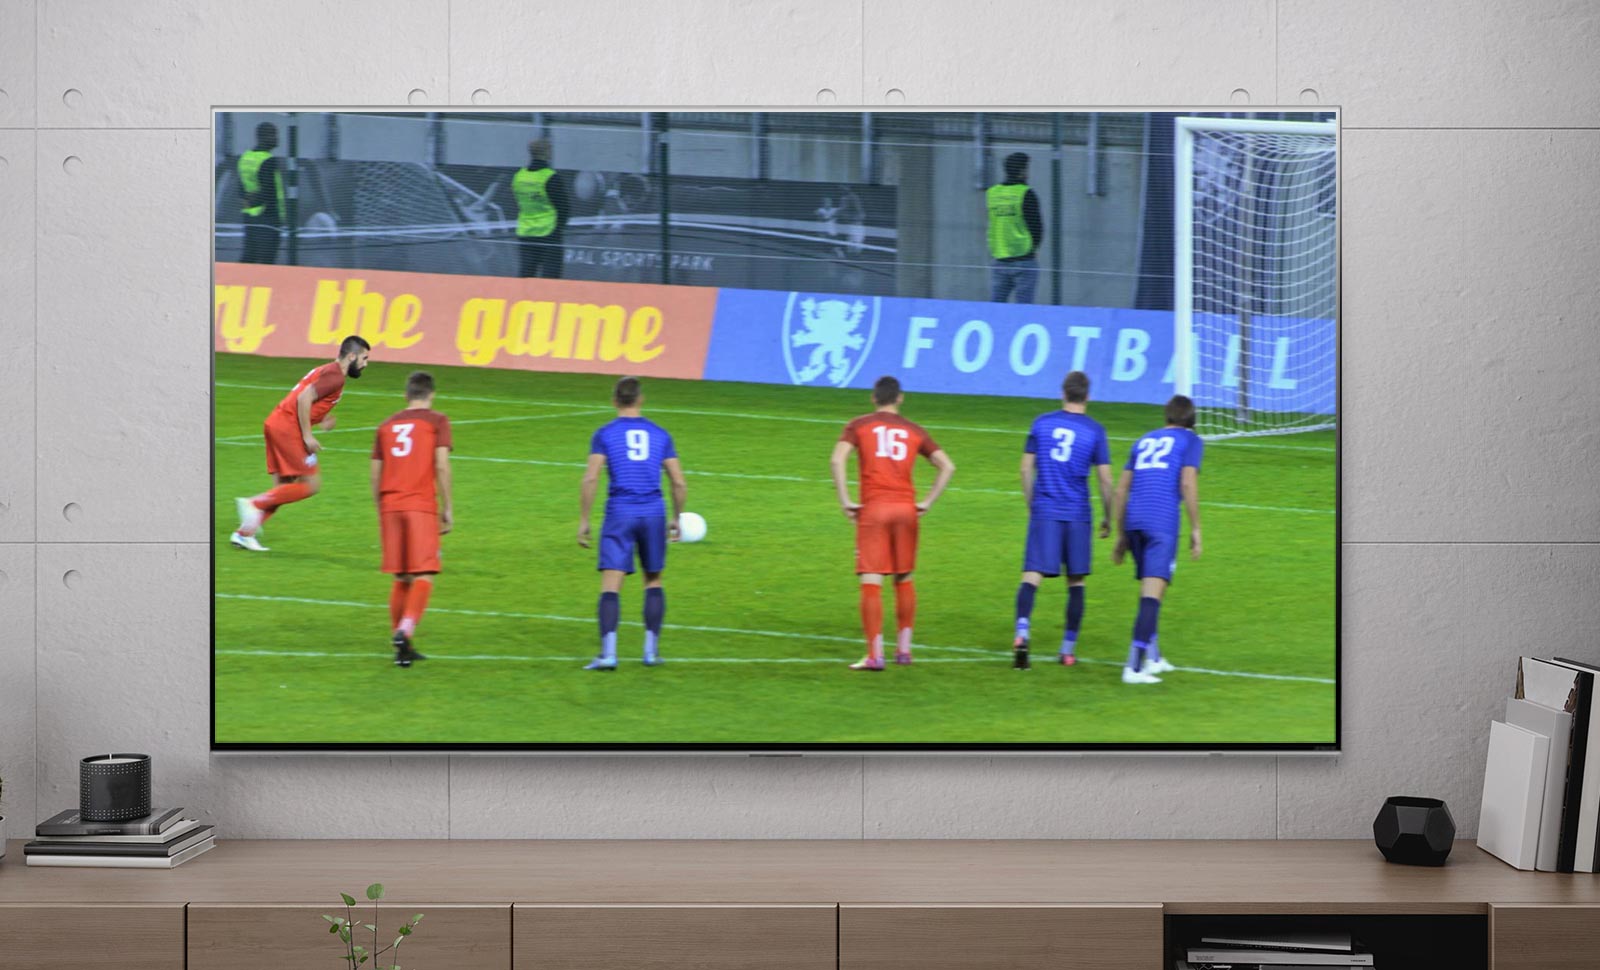 Μια οθόνη τηλεόρασης που δείχνει έναν παίκτη ποδοσφαίρου που σκοράρει σε ένα πέναλτι (αναπαραγωγή βίντεο).